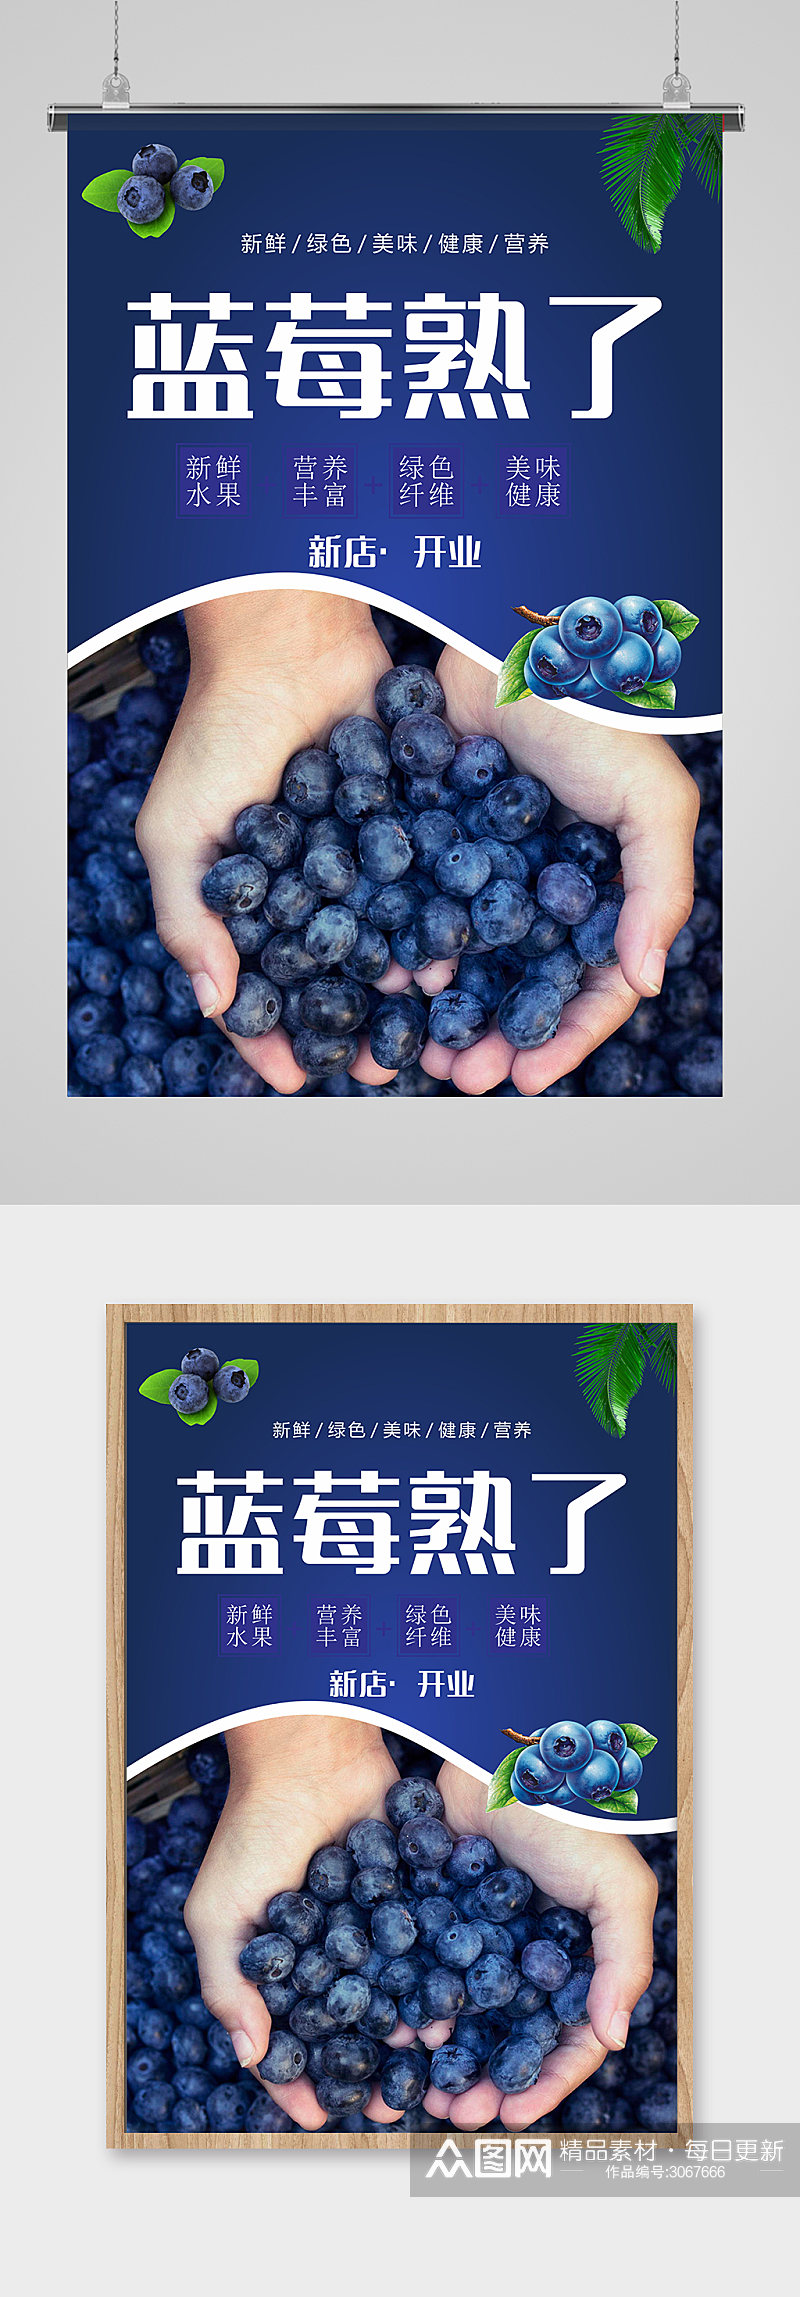 大气蓝莓熟了海报素材